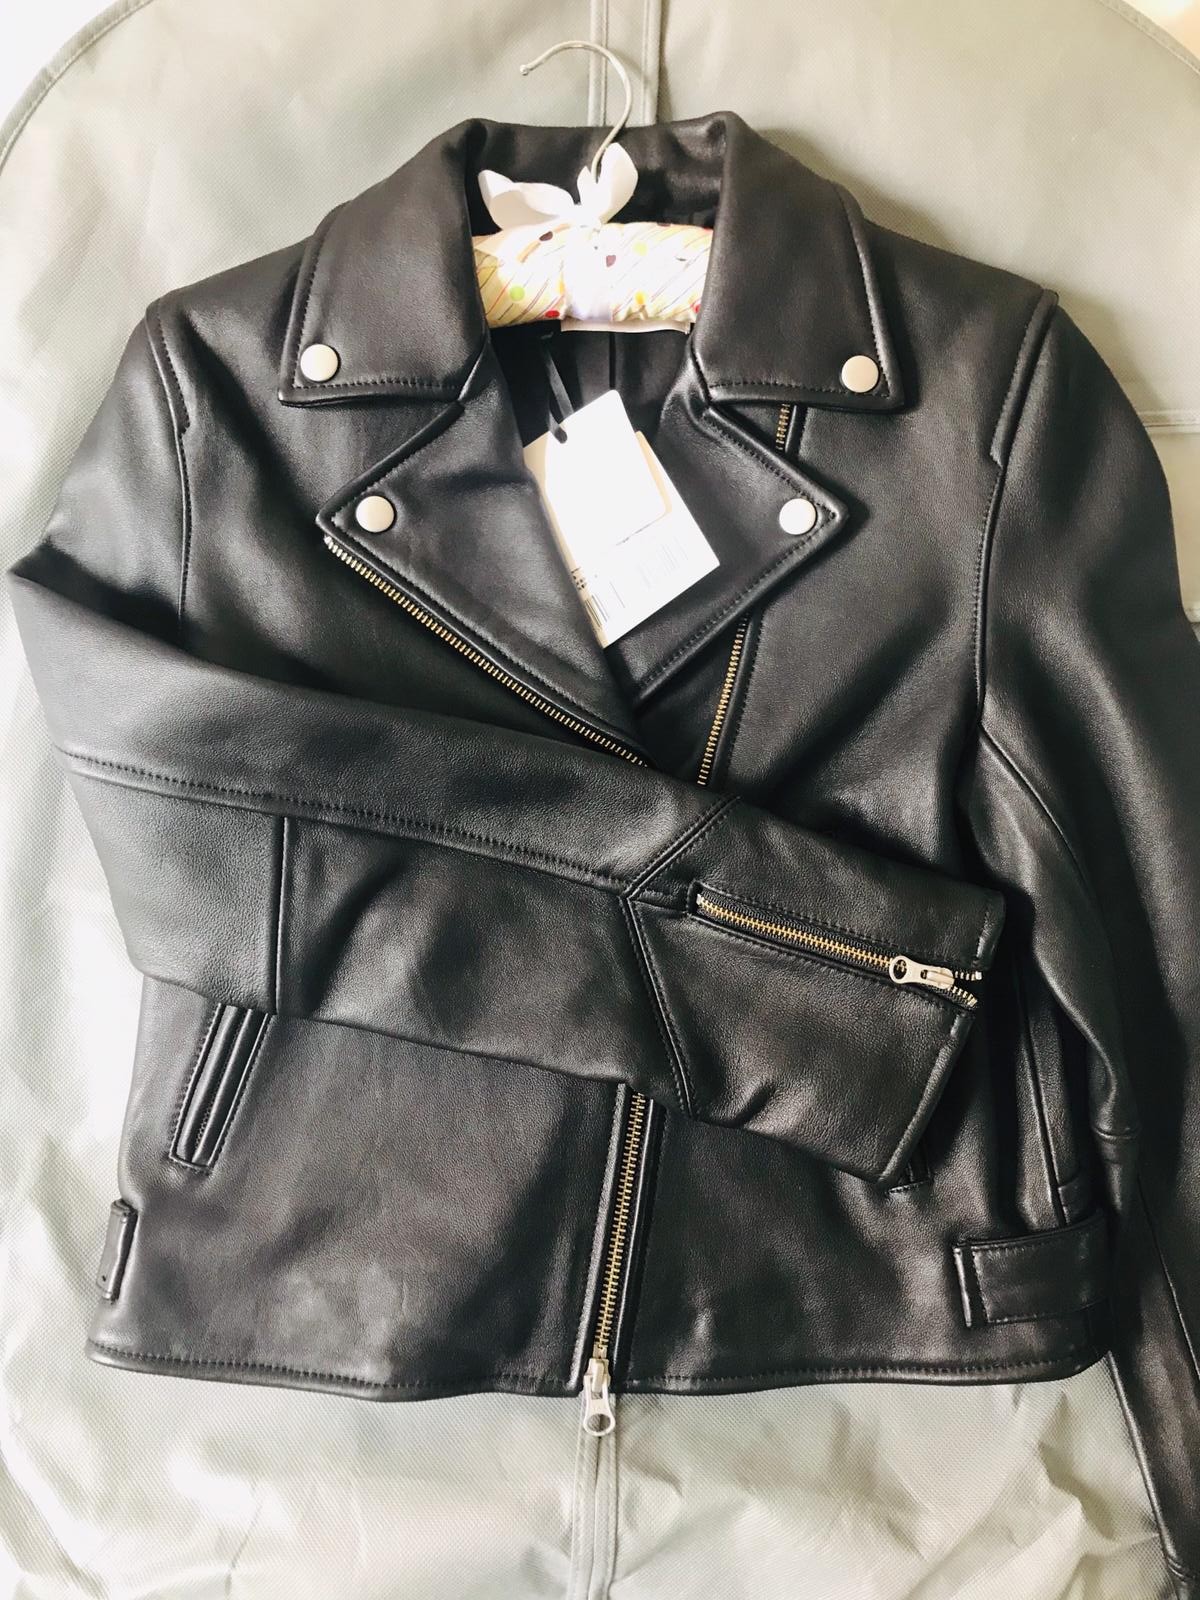 日本品牌 COCO DEAL Biker Leather Jacket 全新女裝全羊皮衣外套 皮褸, 女裝, 外套及戶外衣服 - Carousell